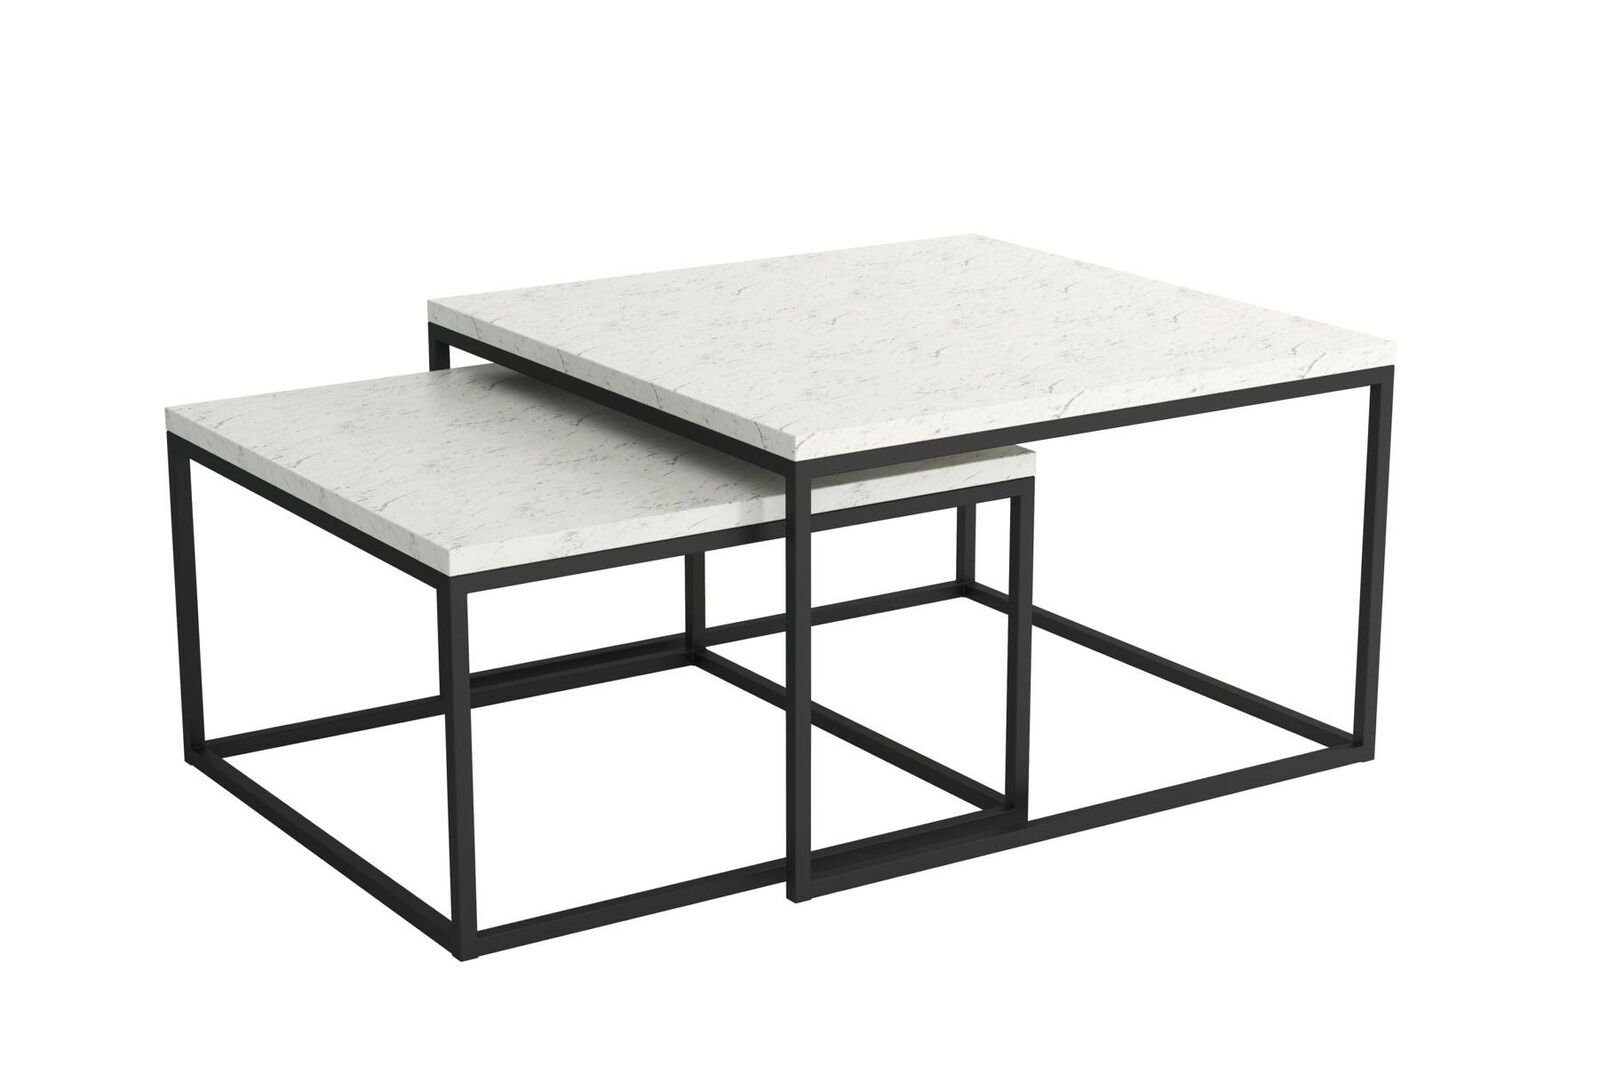 JVmoebel Couchtisch Beistelltisch Designer Tisch Wohnzimmertisch Tische 2x Couchtisch, Beistelltisch Designer Tisch Wohnzimmertisch Tische 2x Couchtisch